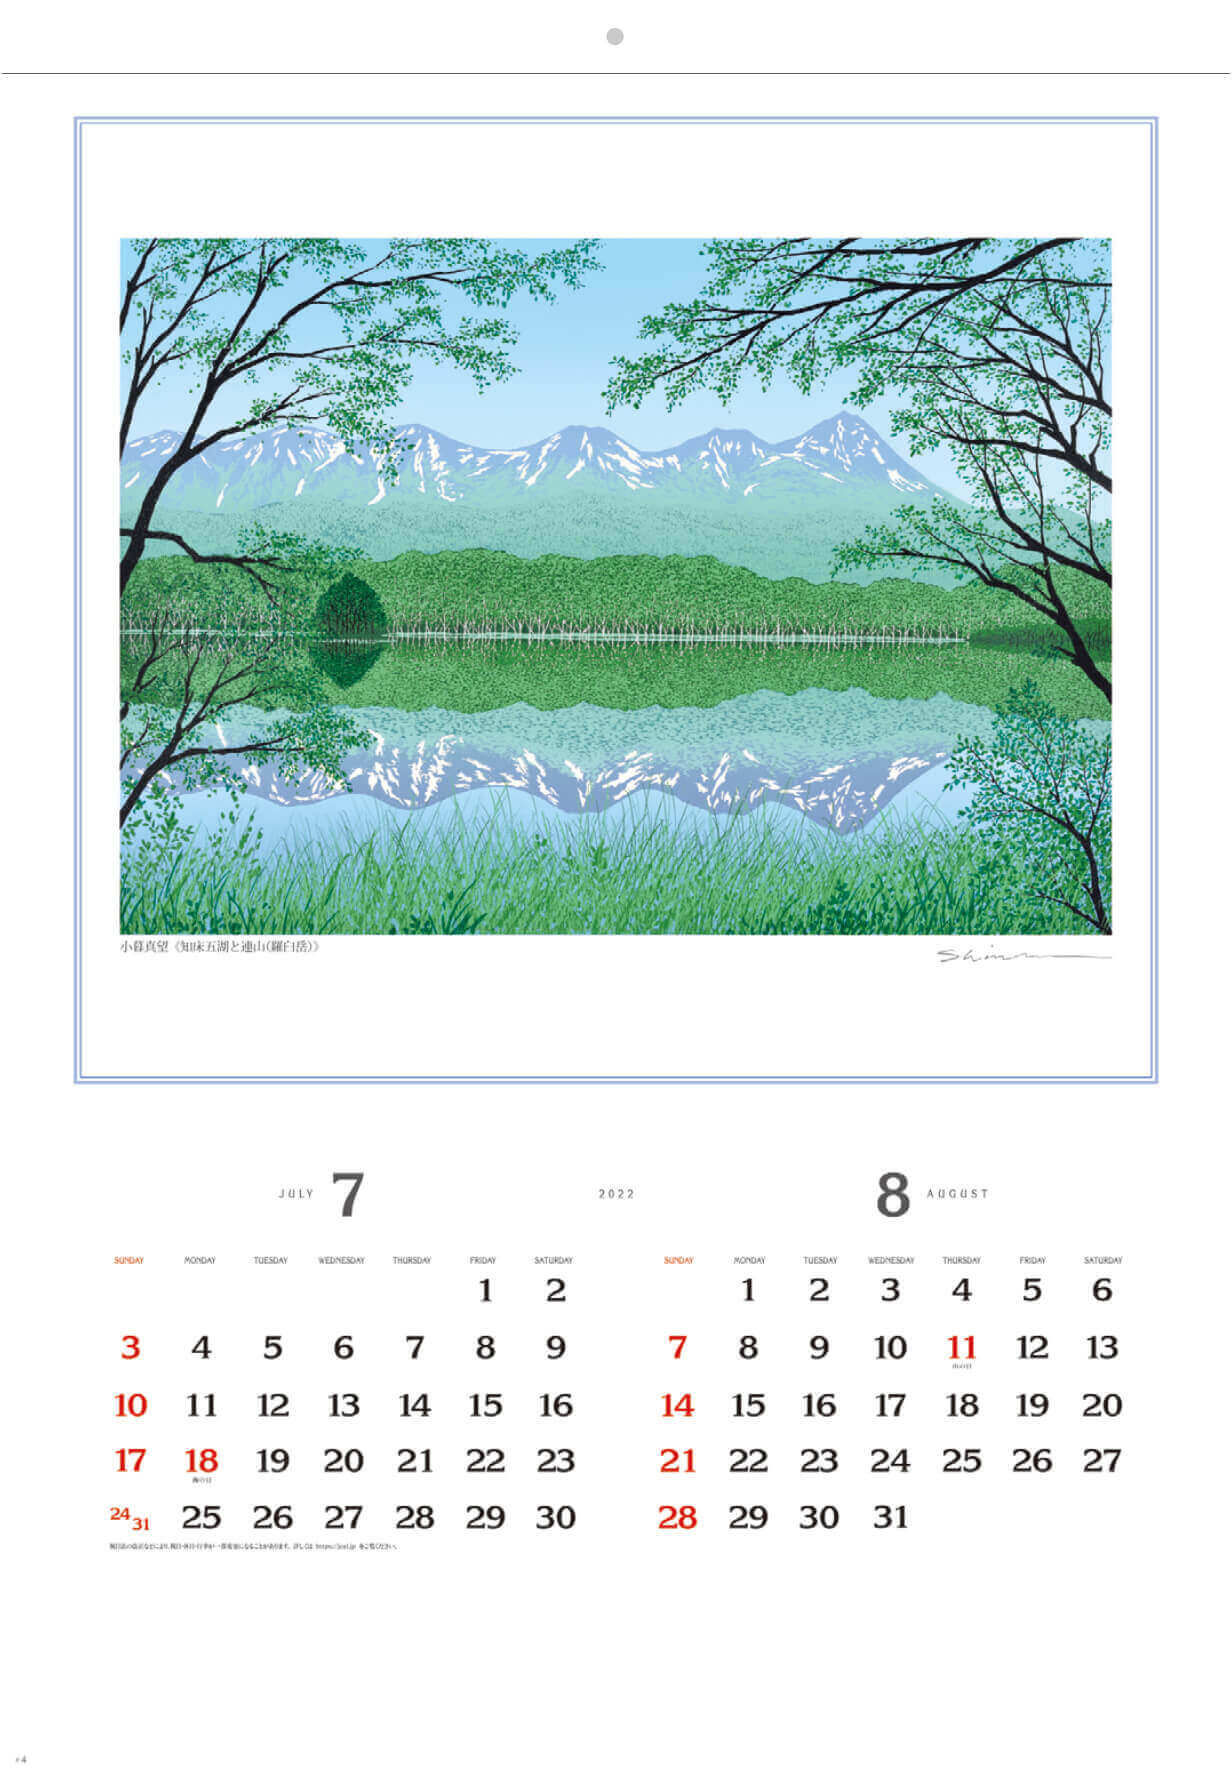 7-8月 知床五湖と連山(羅臼岳) 小暮真望版画集 2022年カレンダーの画像